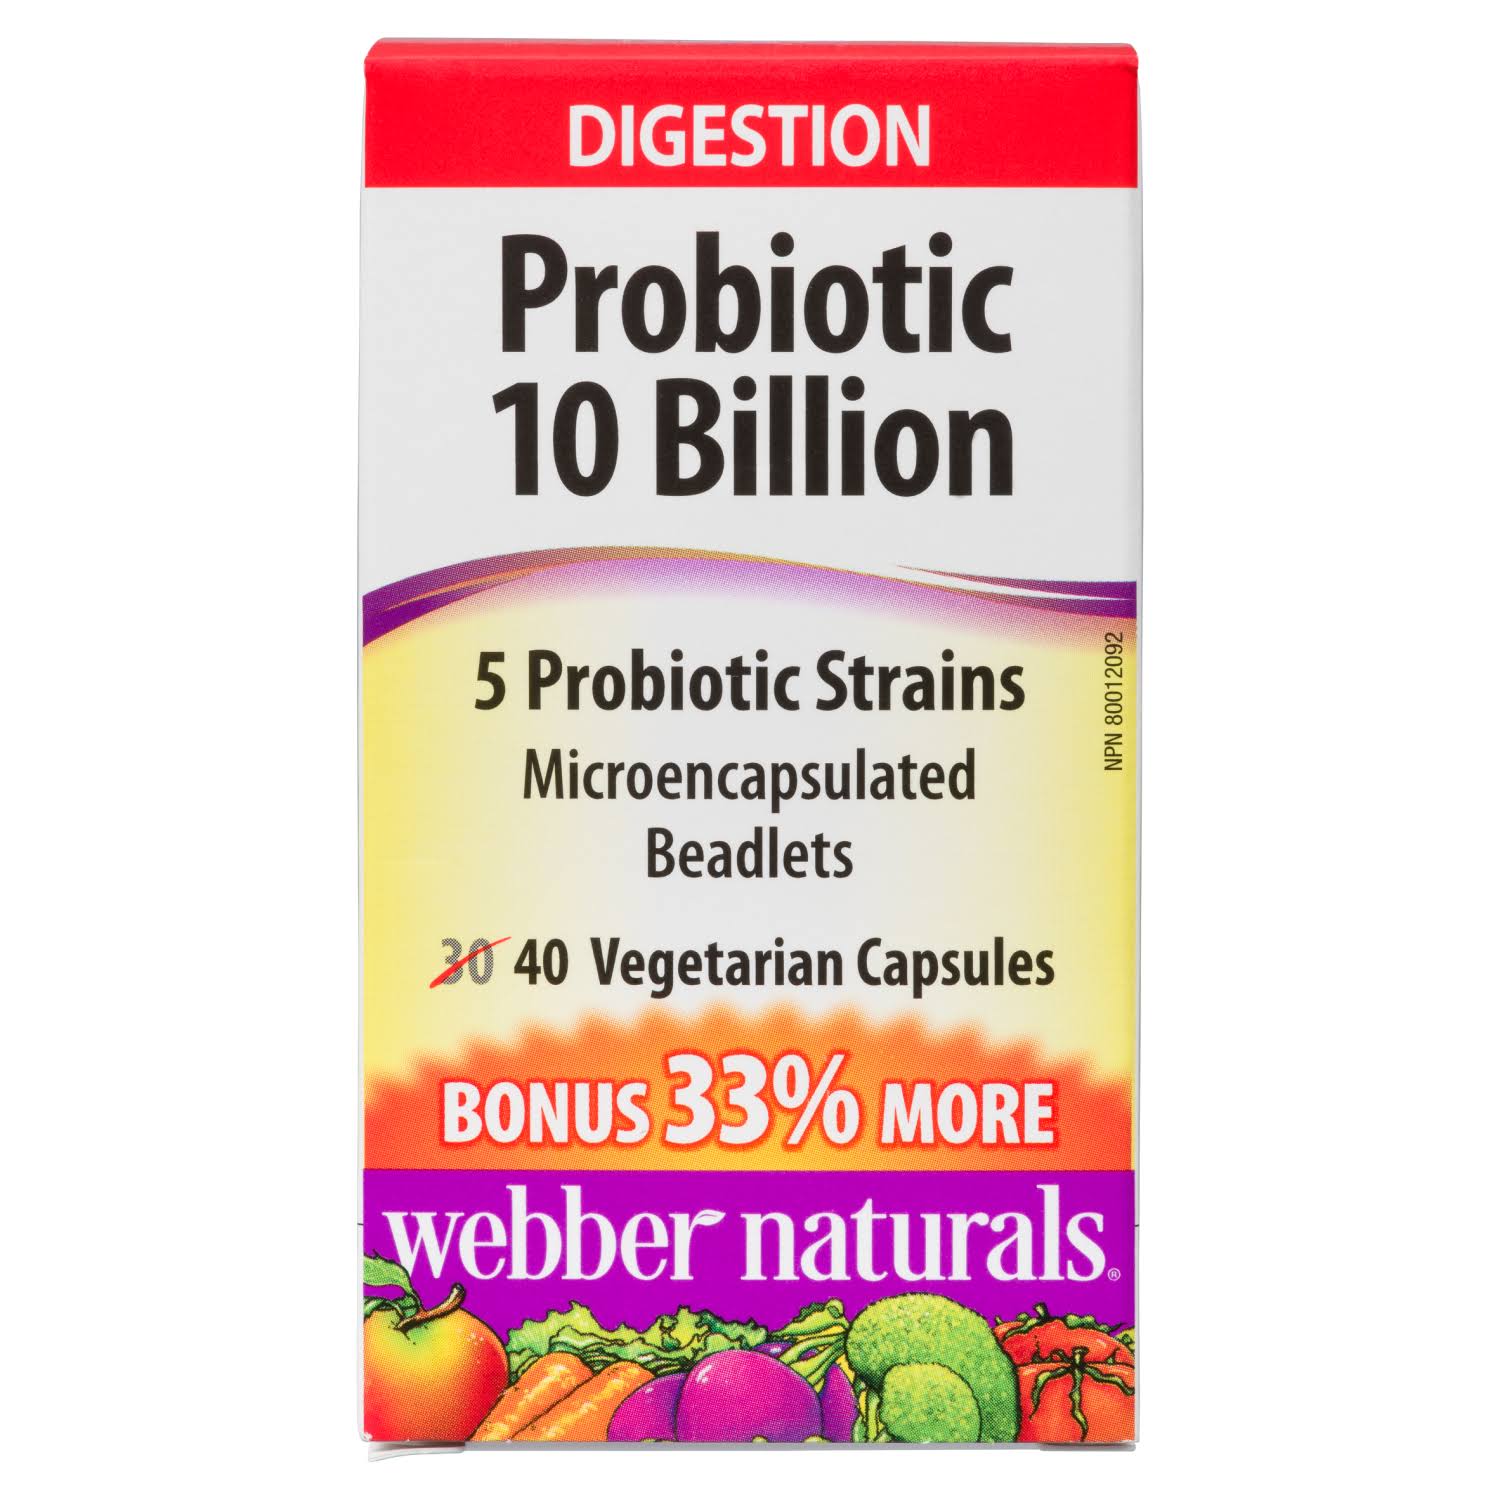 Webber Naturals Complete Probiotic Capsules